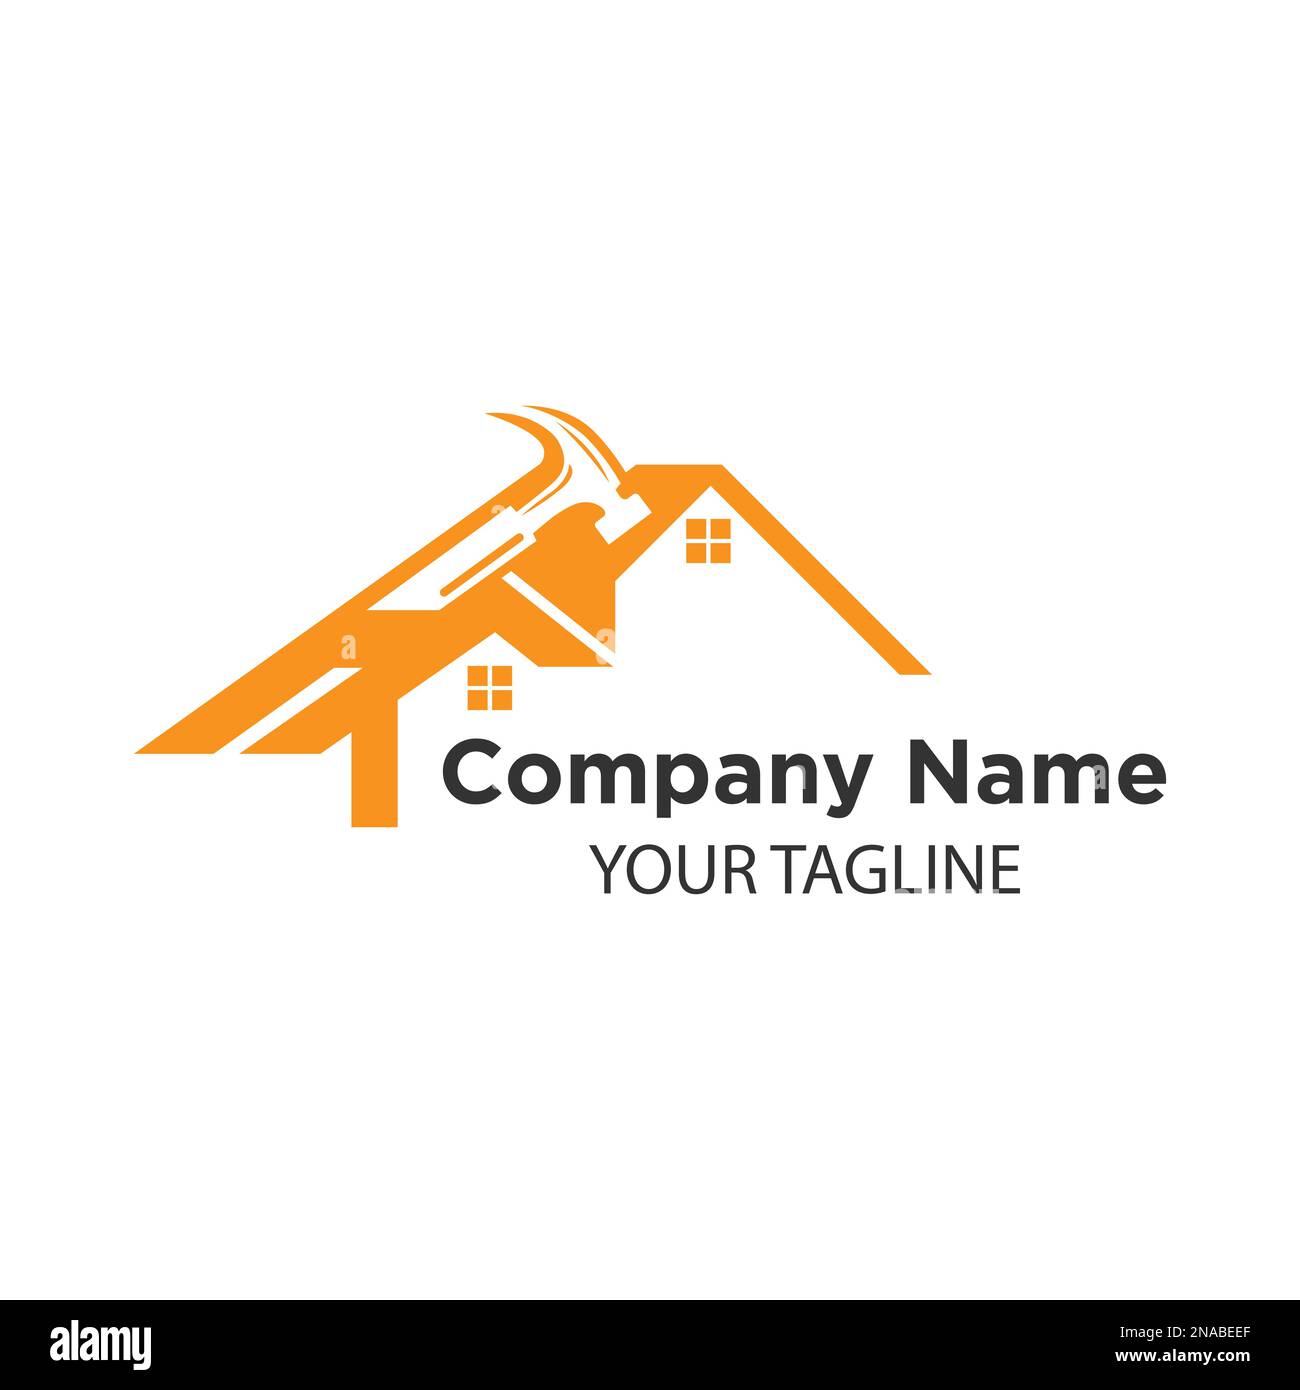 Creative House Construction Concept Logo Design Template.EPS 10 Stock Vector